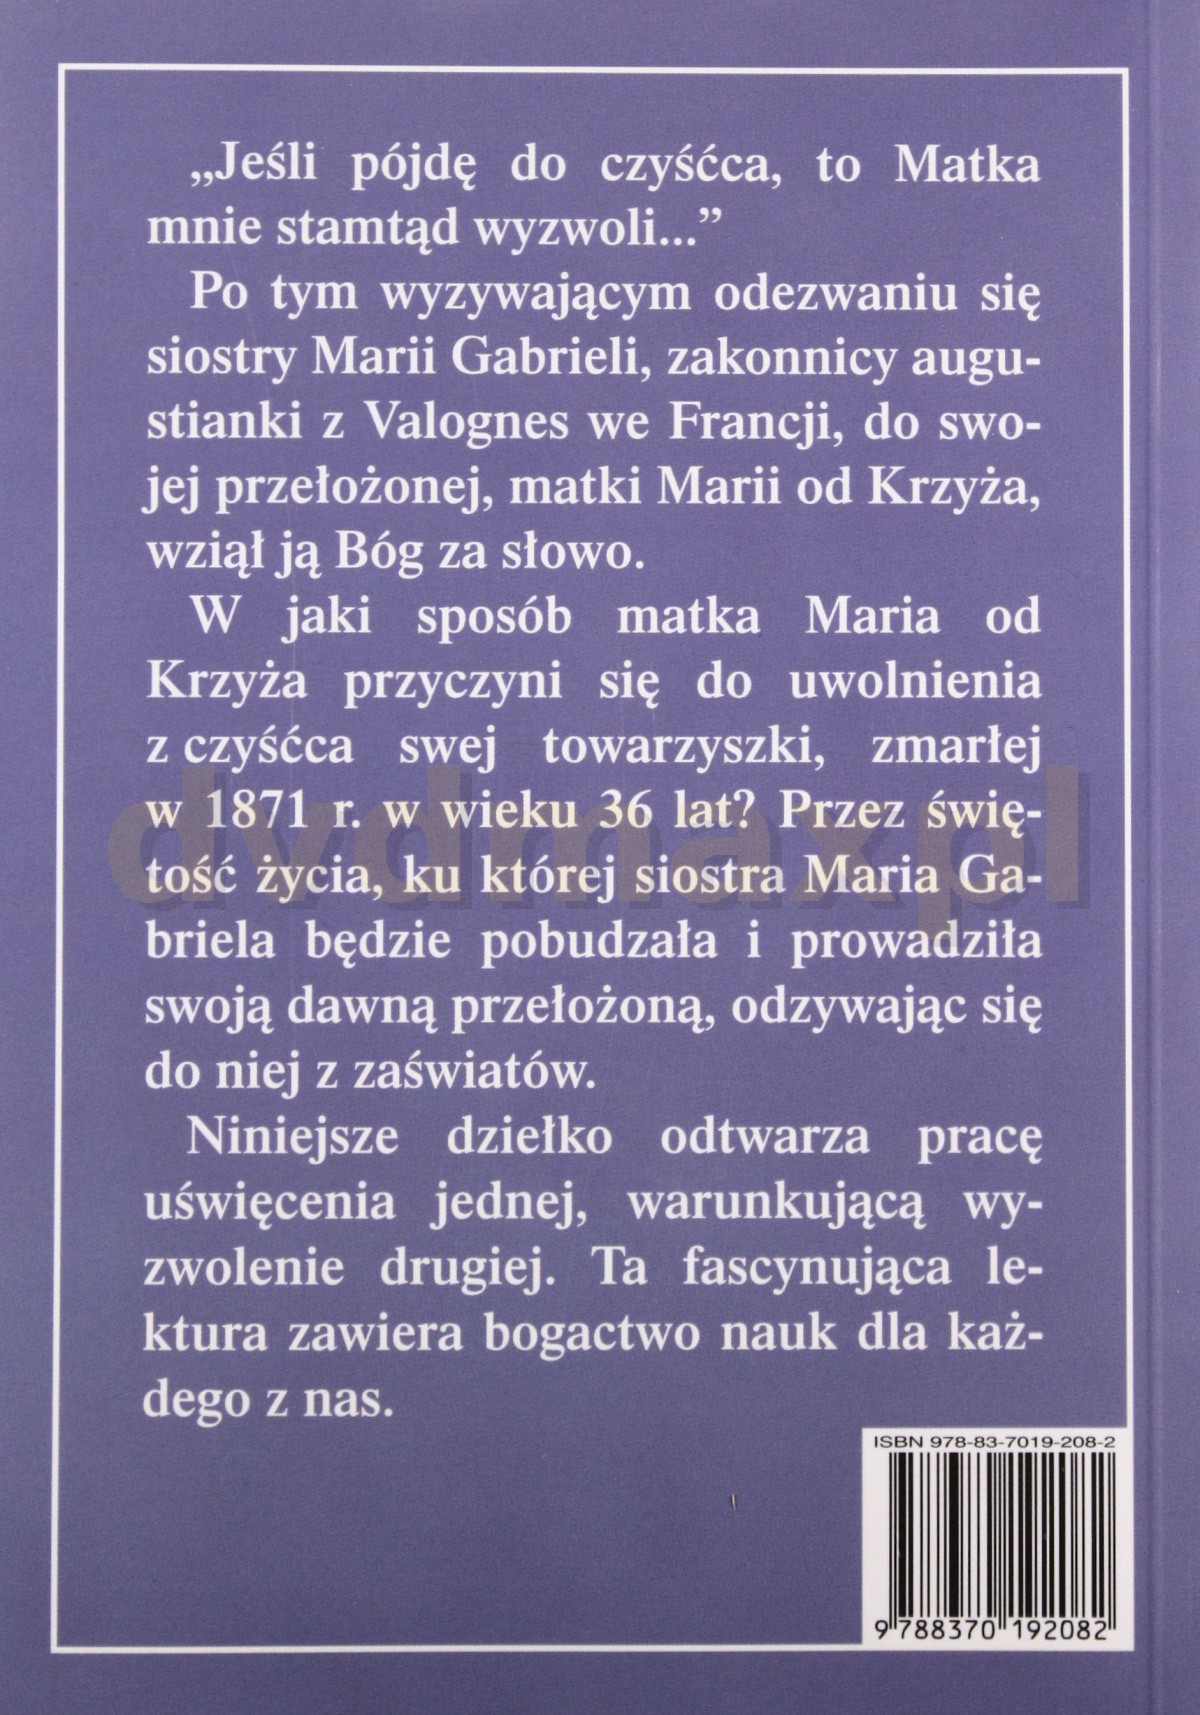 Rękopis z czyśćca 2014 - Rękopis z czyśćca - s. Maria od Krzyża 2014 tył.jpg